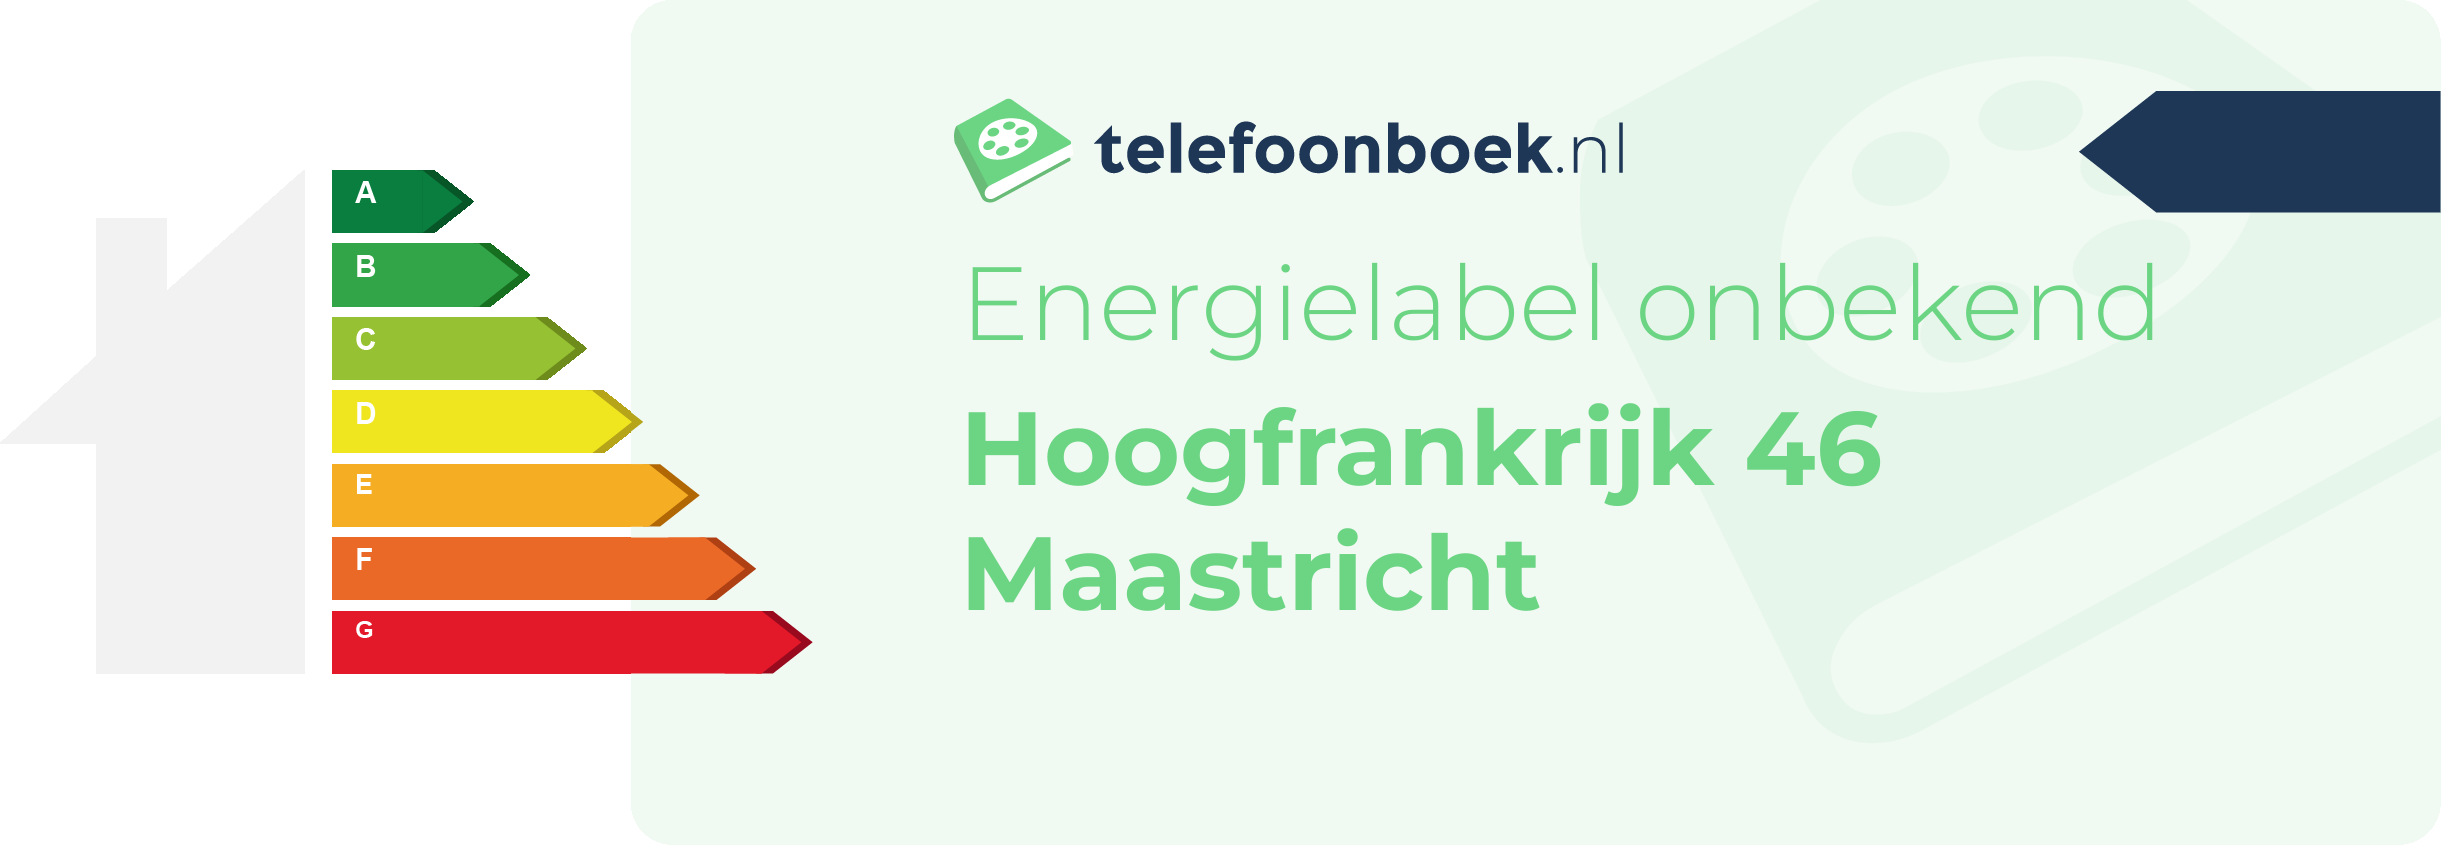 Energielabel Hoogfrankrijk 46 Maastricht